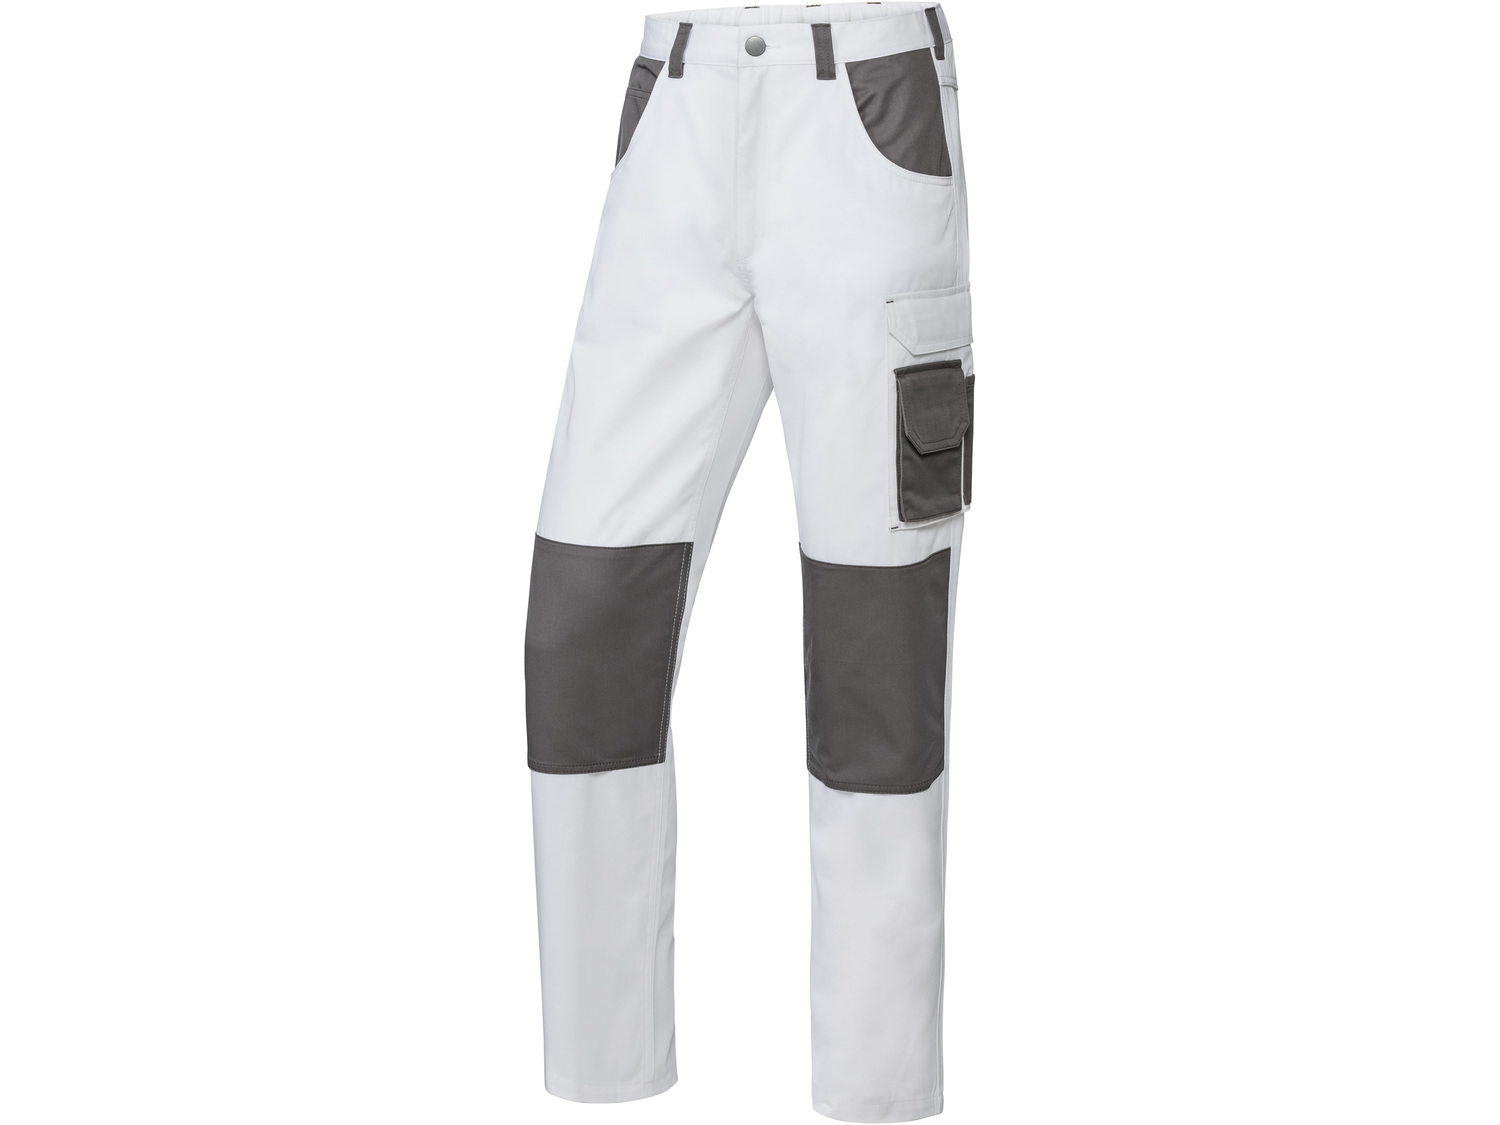 Spodnie robocze Parkside, cena 54,90 PLN 
3 wzory 
- rozmiary: 48-56*
- kieszenie ...